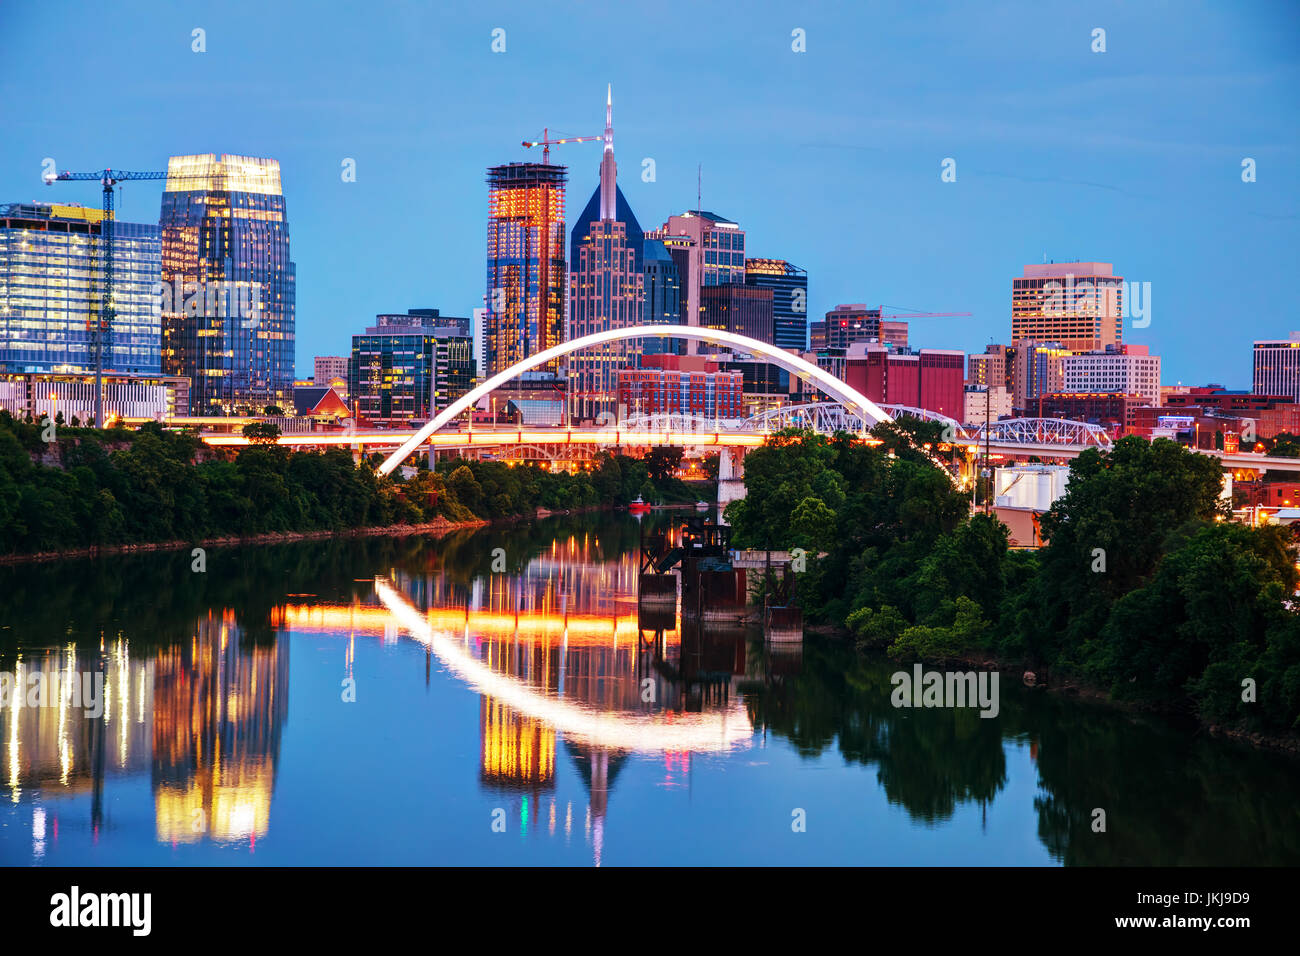 Die Innenstadt von Nashville, Tennessee Stadtbild bei Nacht Stockfoto